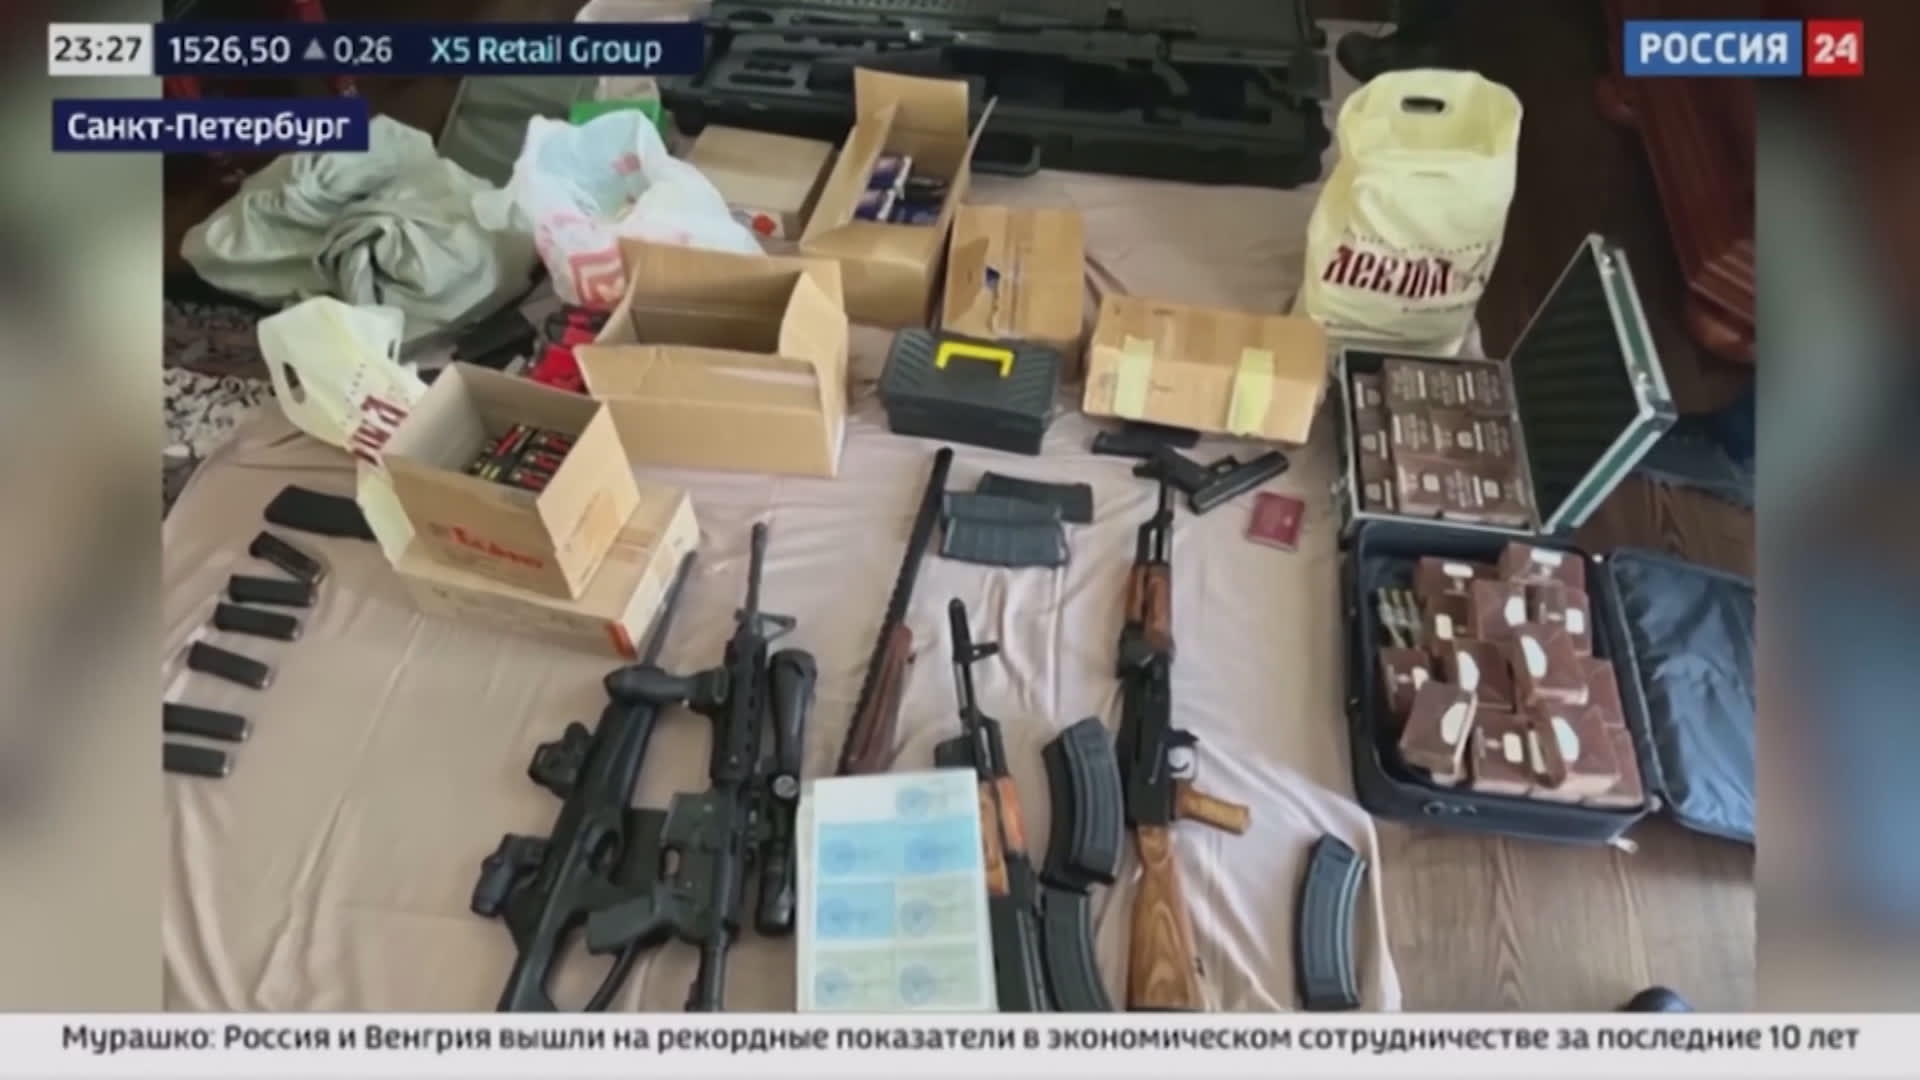 Záběry ruské televize ze zásahu do sídla Jevgenije Prigožina těsně po červnovém pokusu o puč